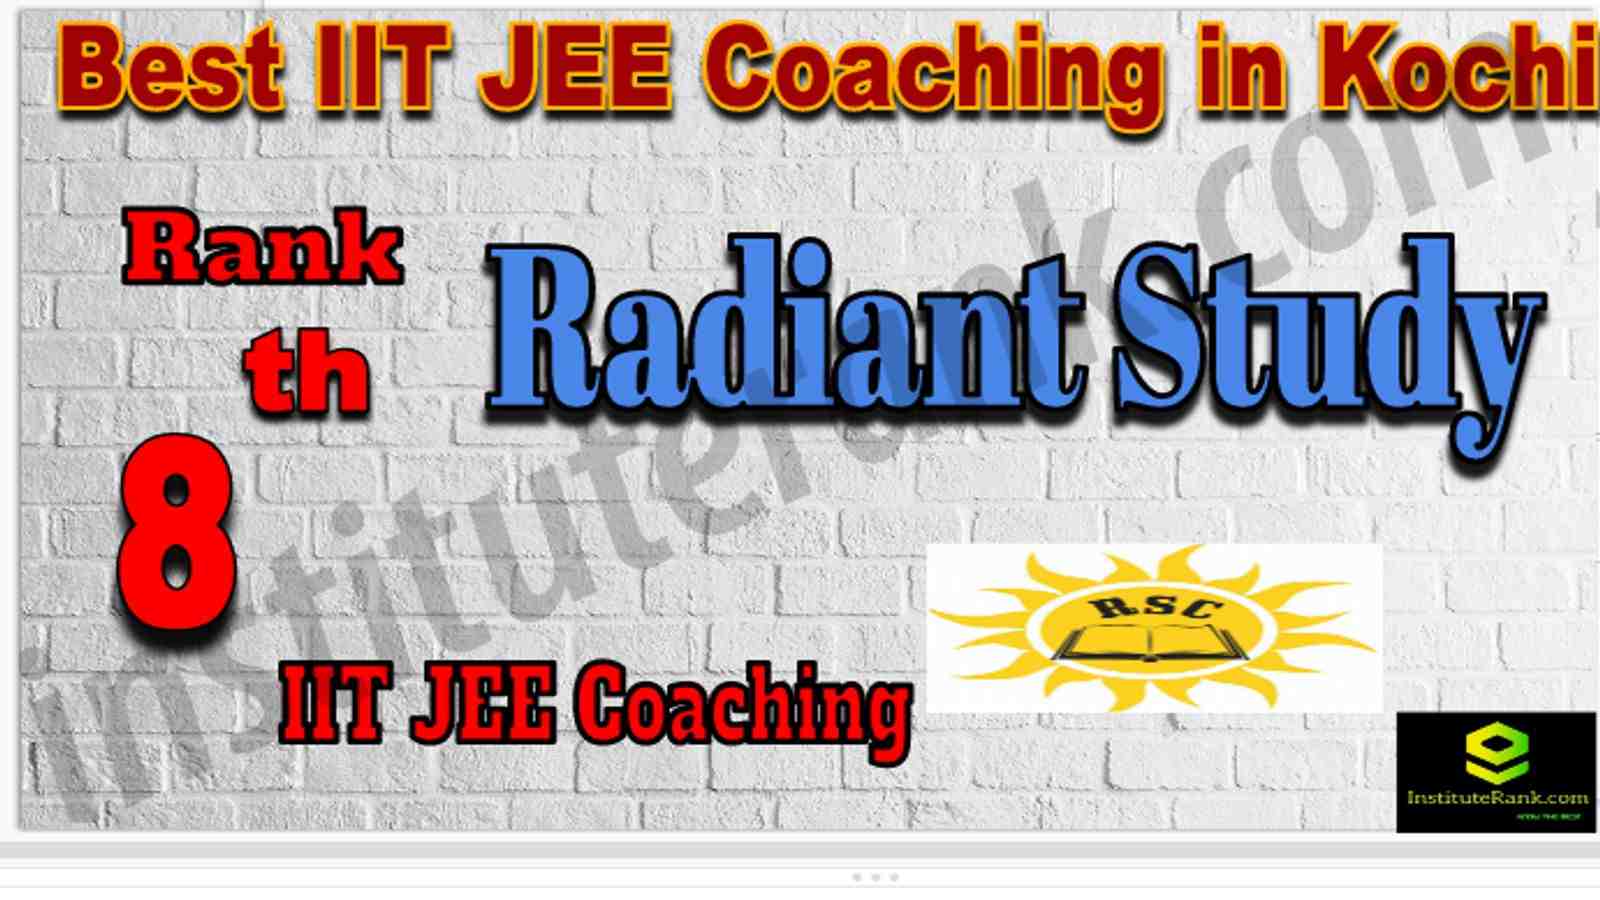 Rank 8th Best IIT JEE Coaching in Kochi